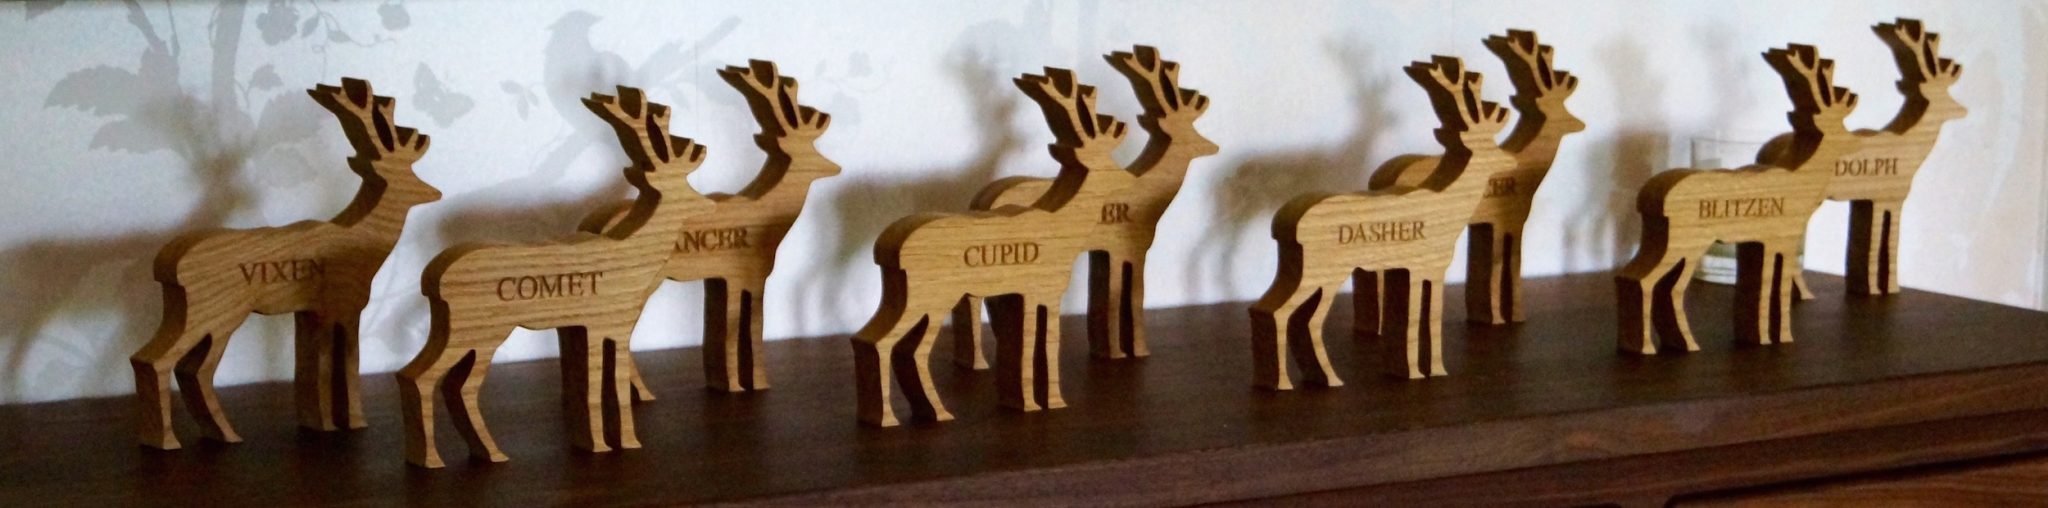 personalised-wooden-reindeer-makemesomethingspecial-com